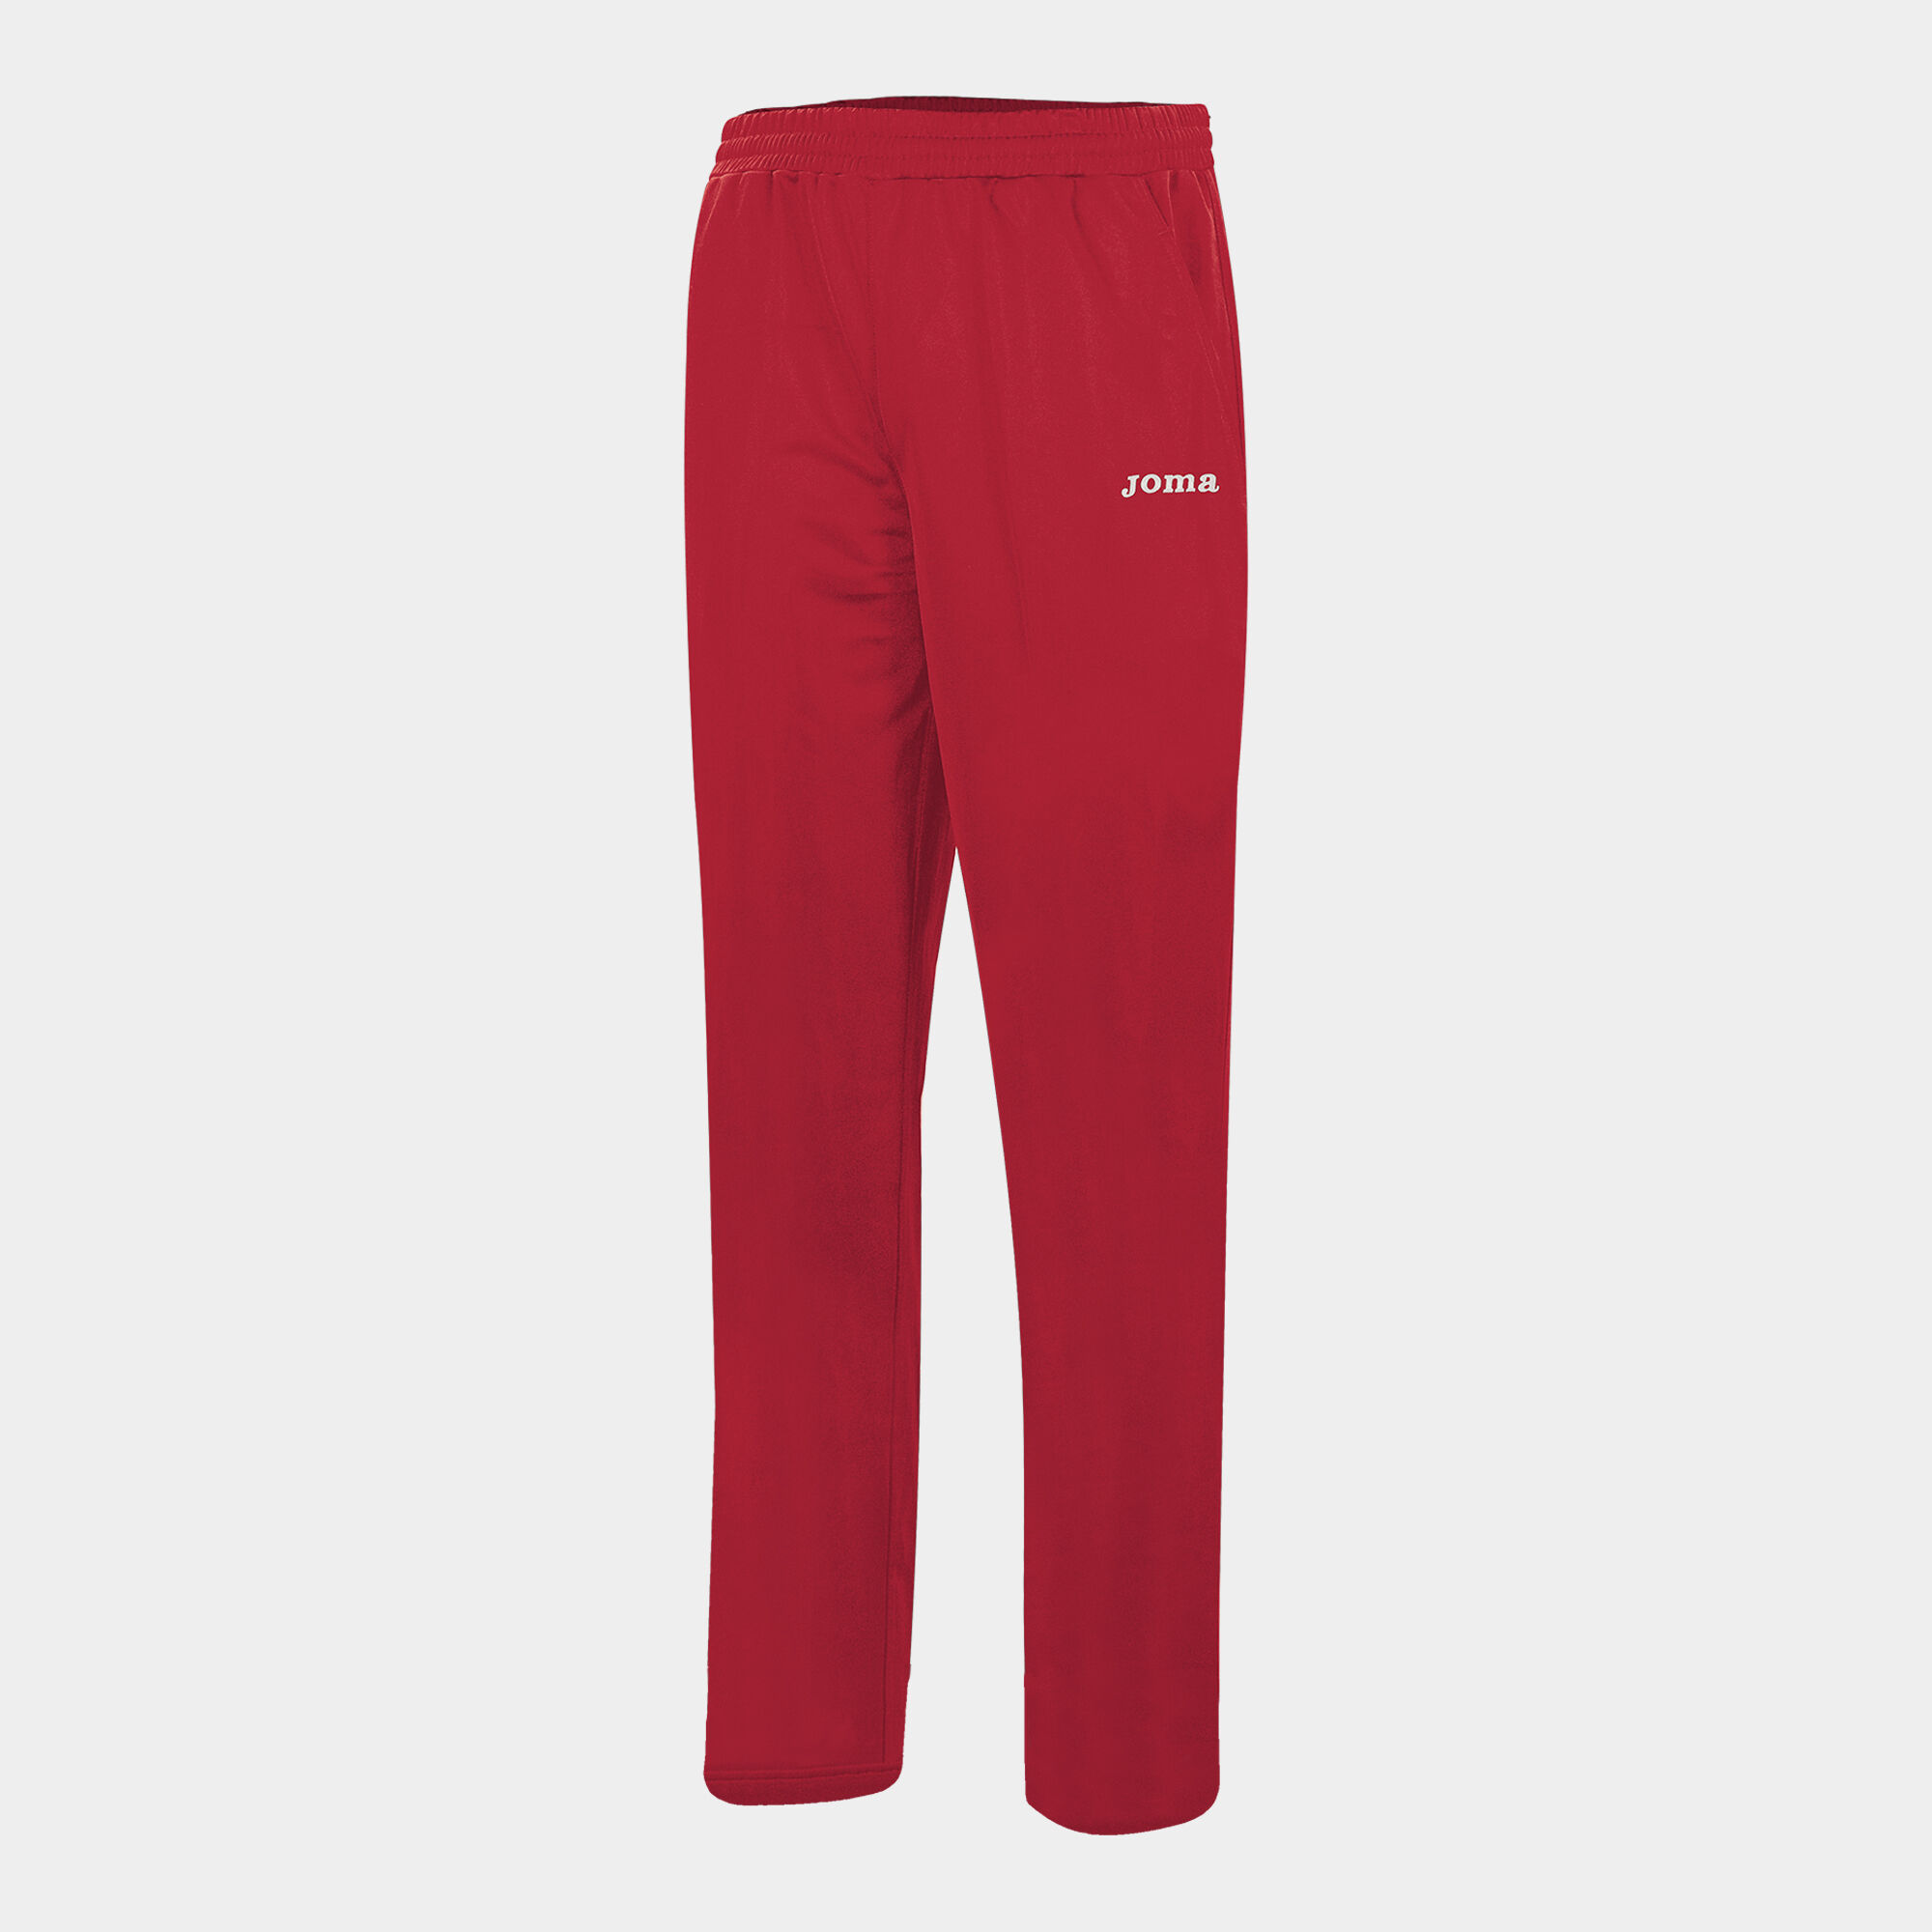 Longs pants woman Team red